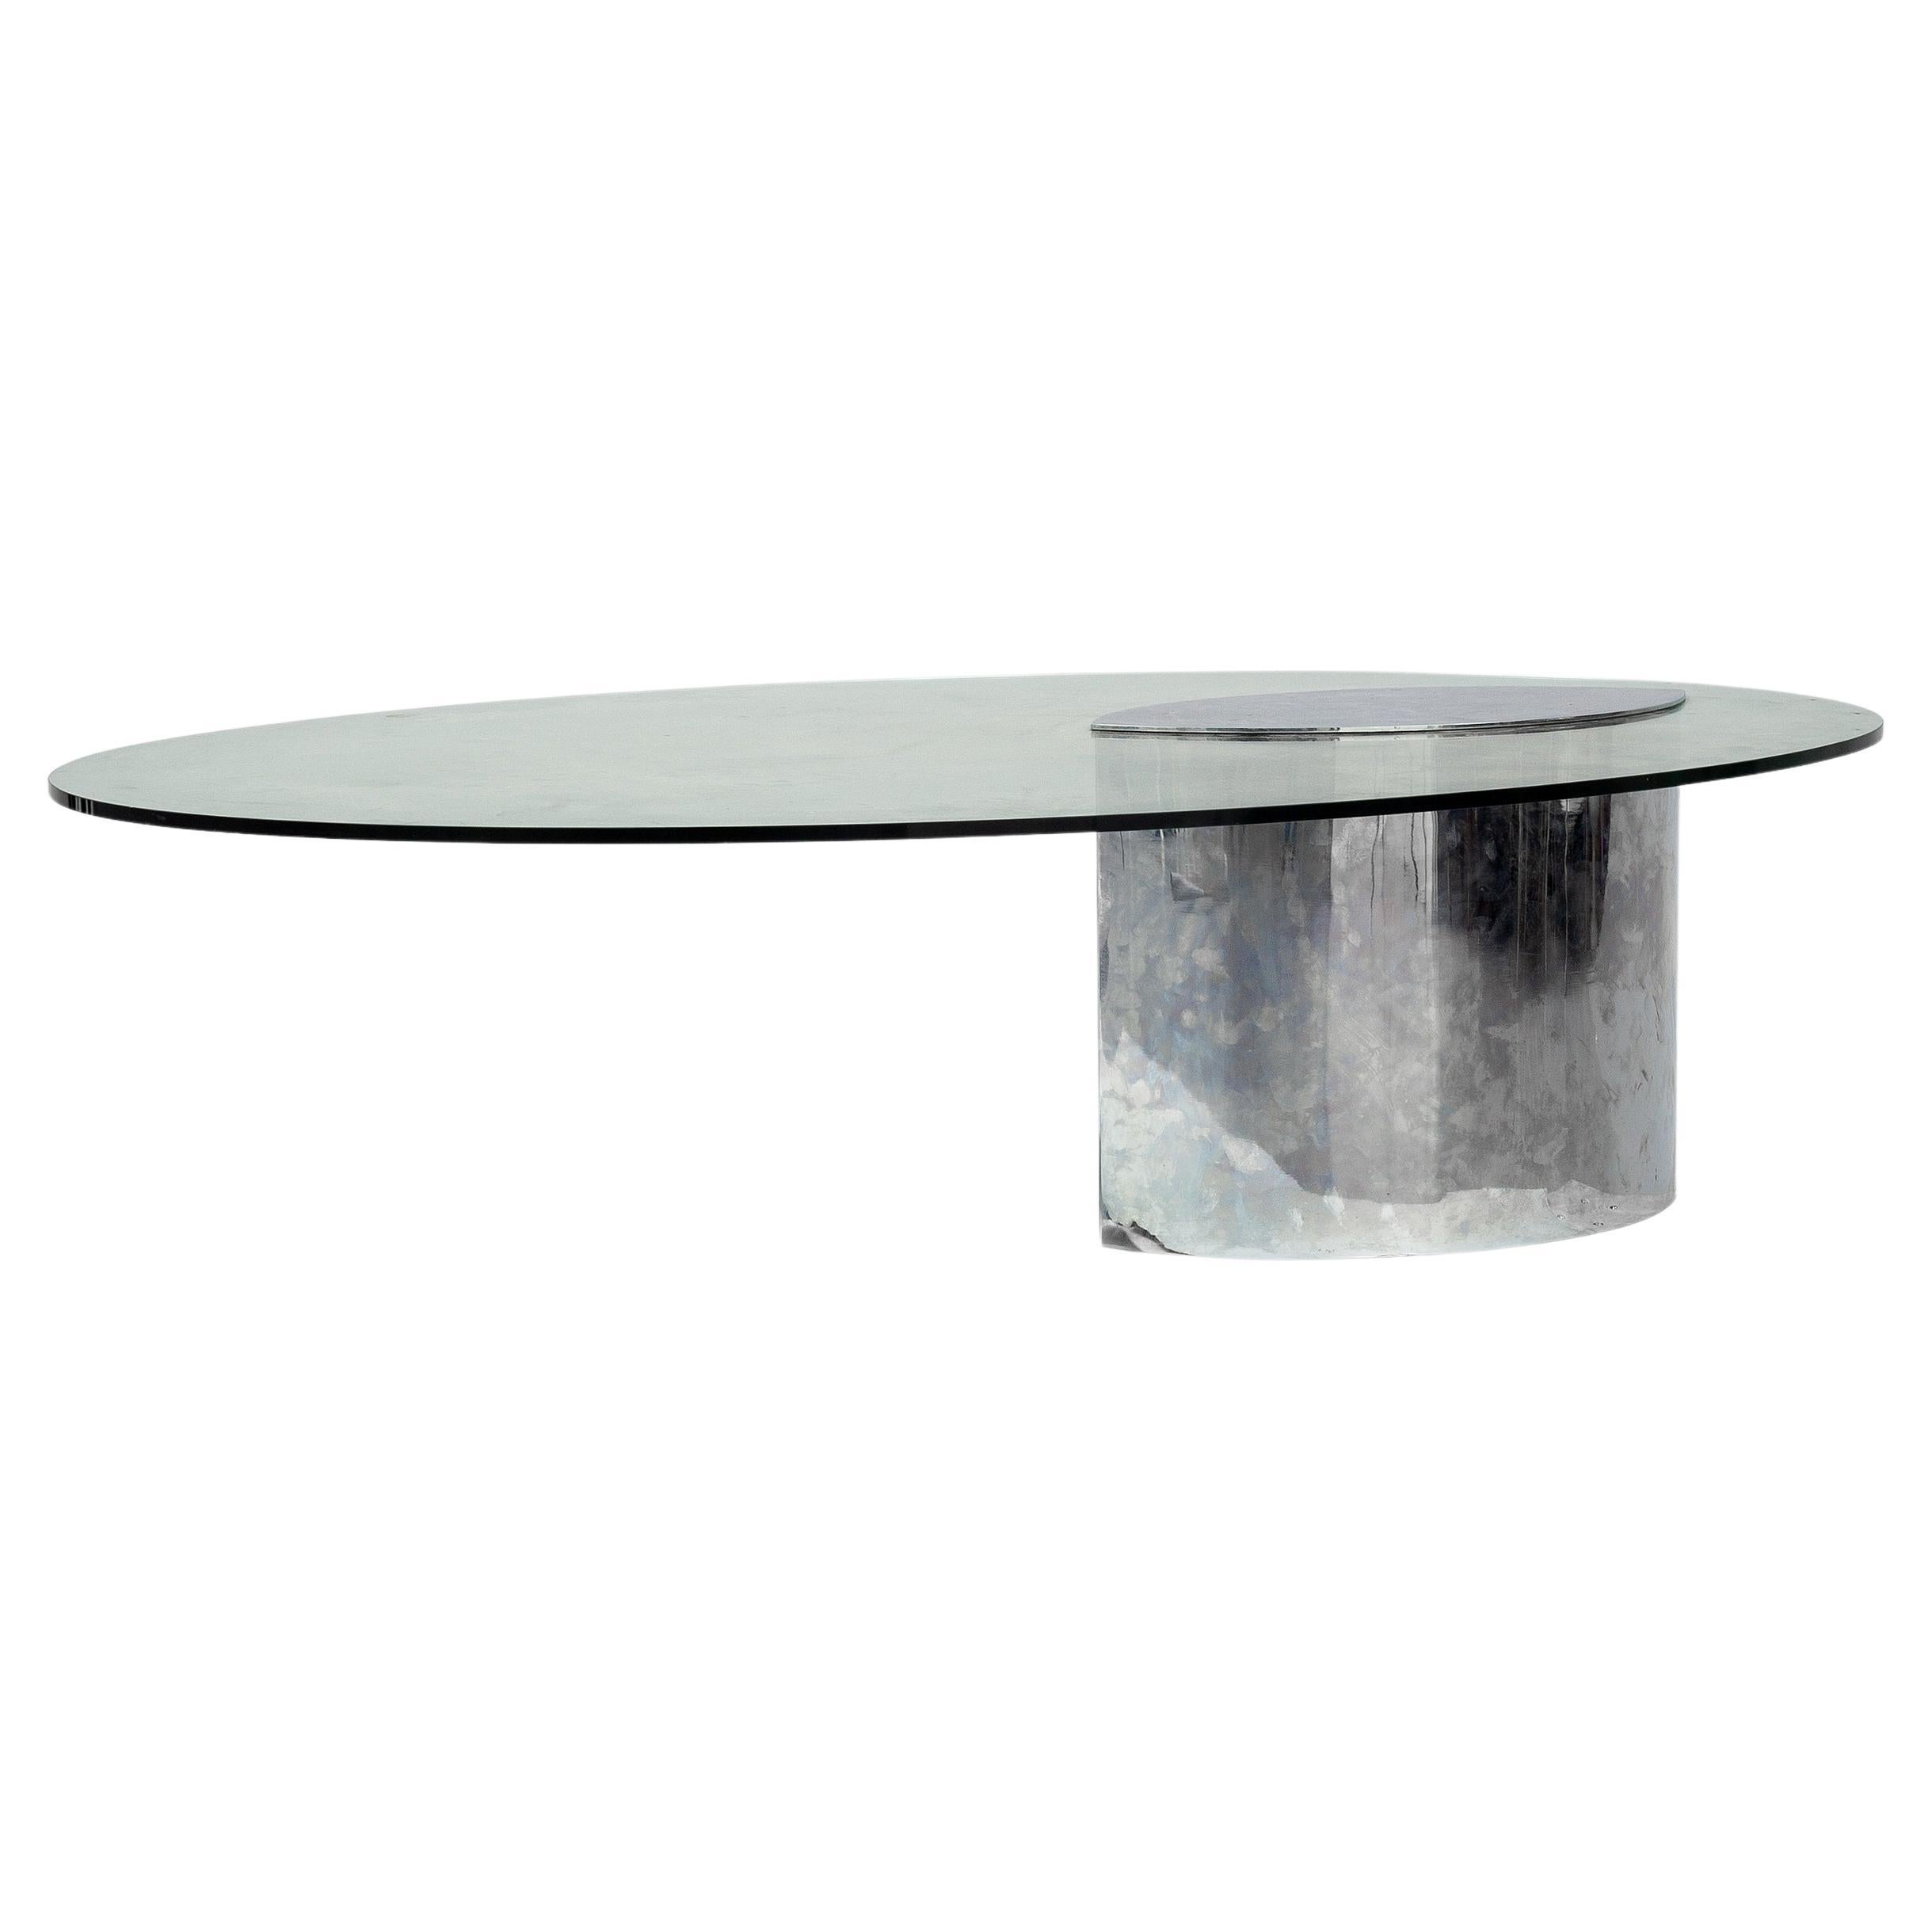 Table basse Cini Boeri avec plateau en verre, modèle Lunario pour Knoll